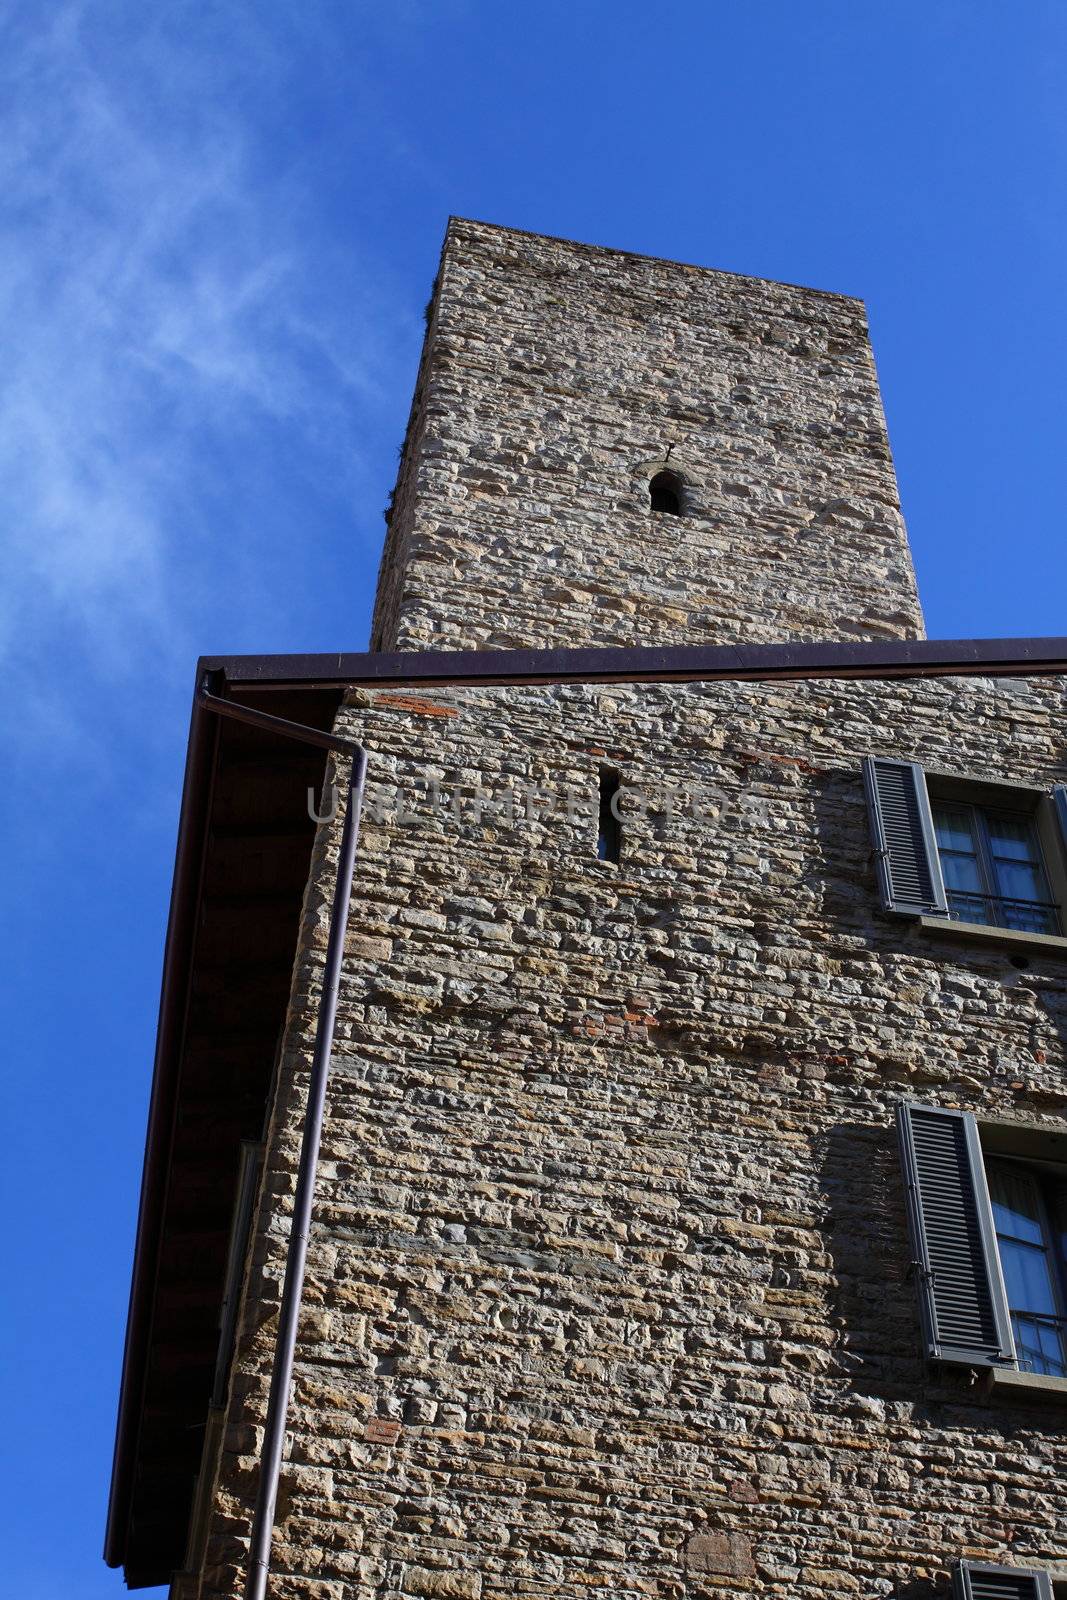 Bergamo building in Italy by mariusz_prusaczyk